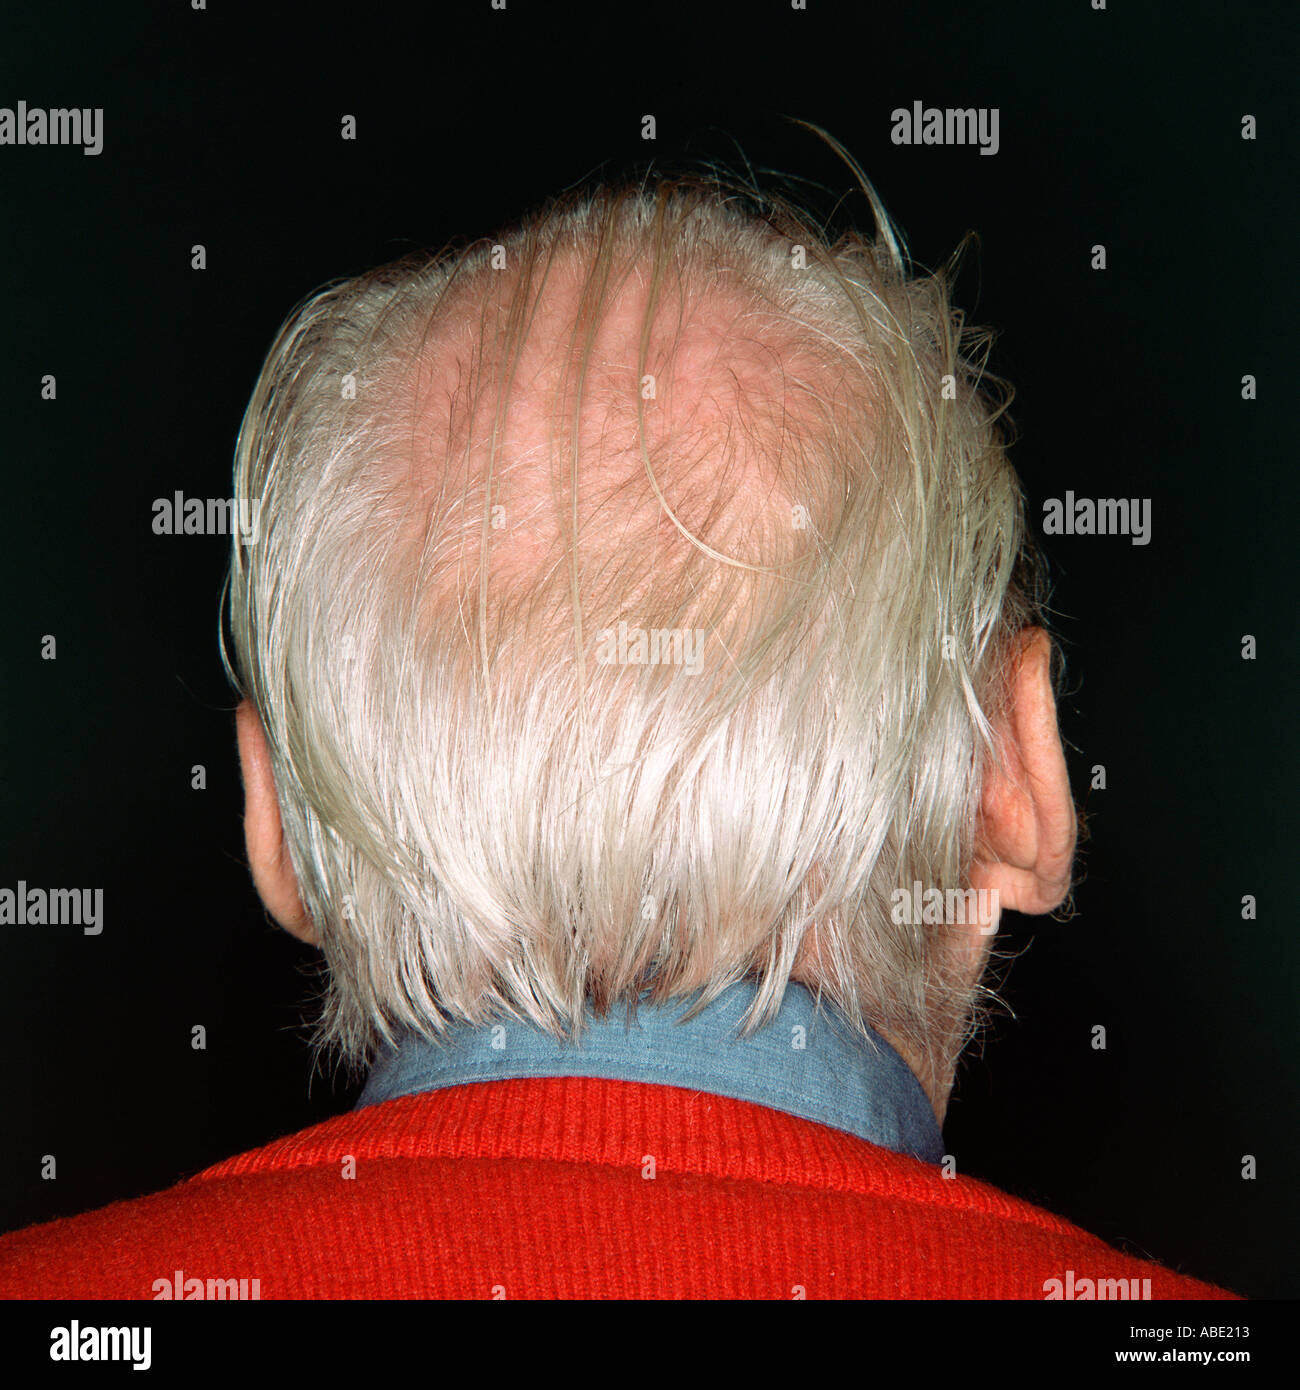 White-haired senior man Stock Photo